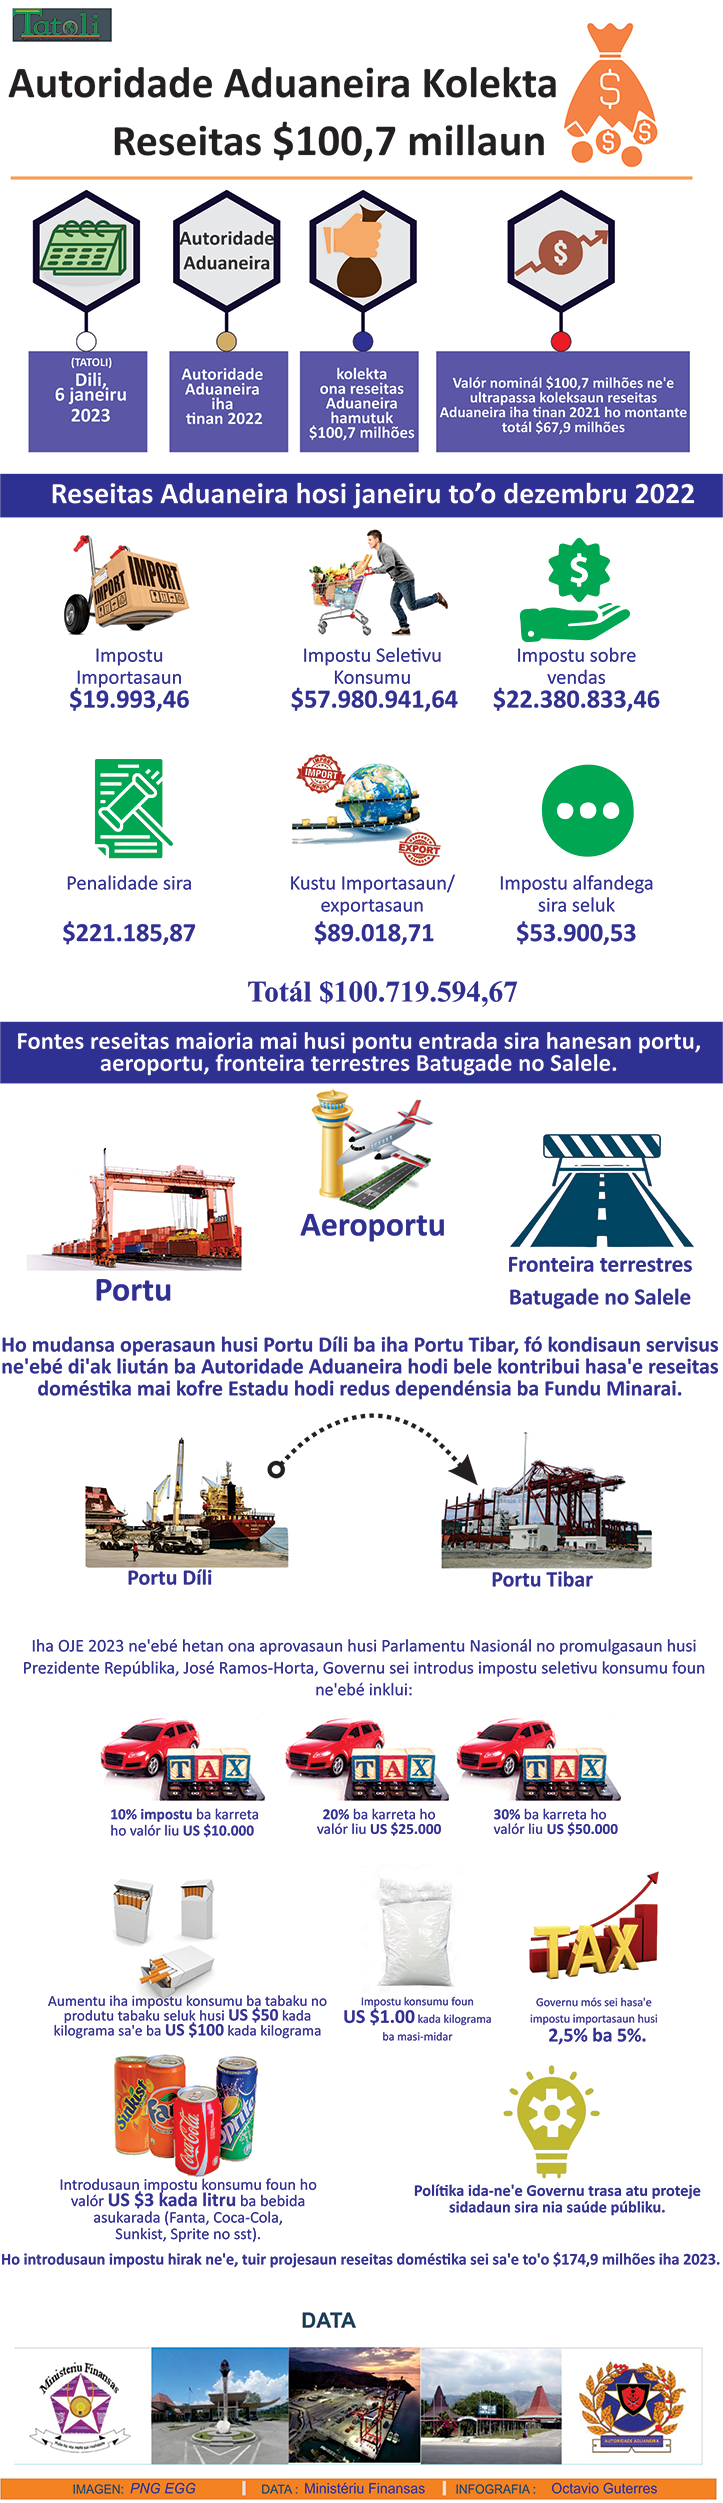 Infografia: Autoridade Aduaneira Kolekta  Reseitas $100,7 millaun